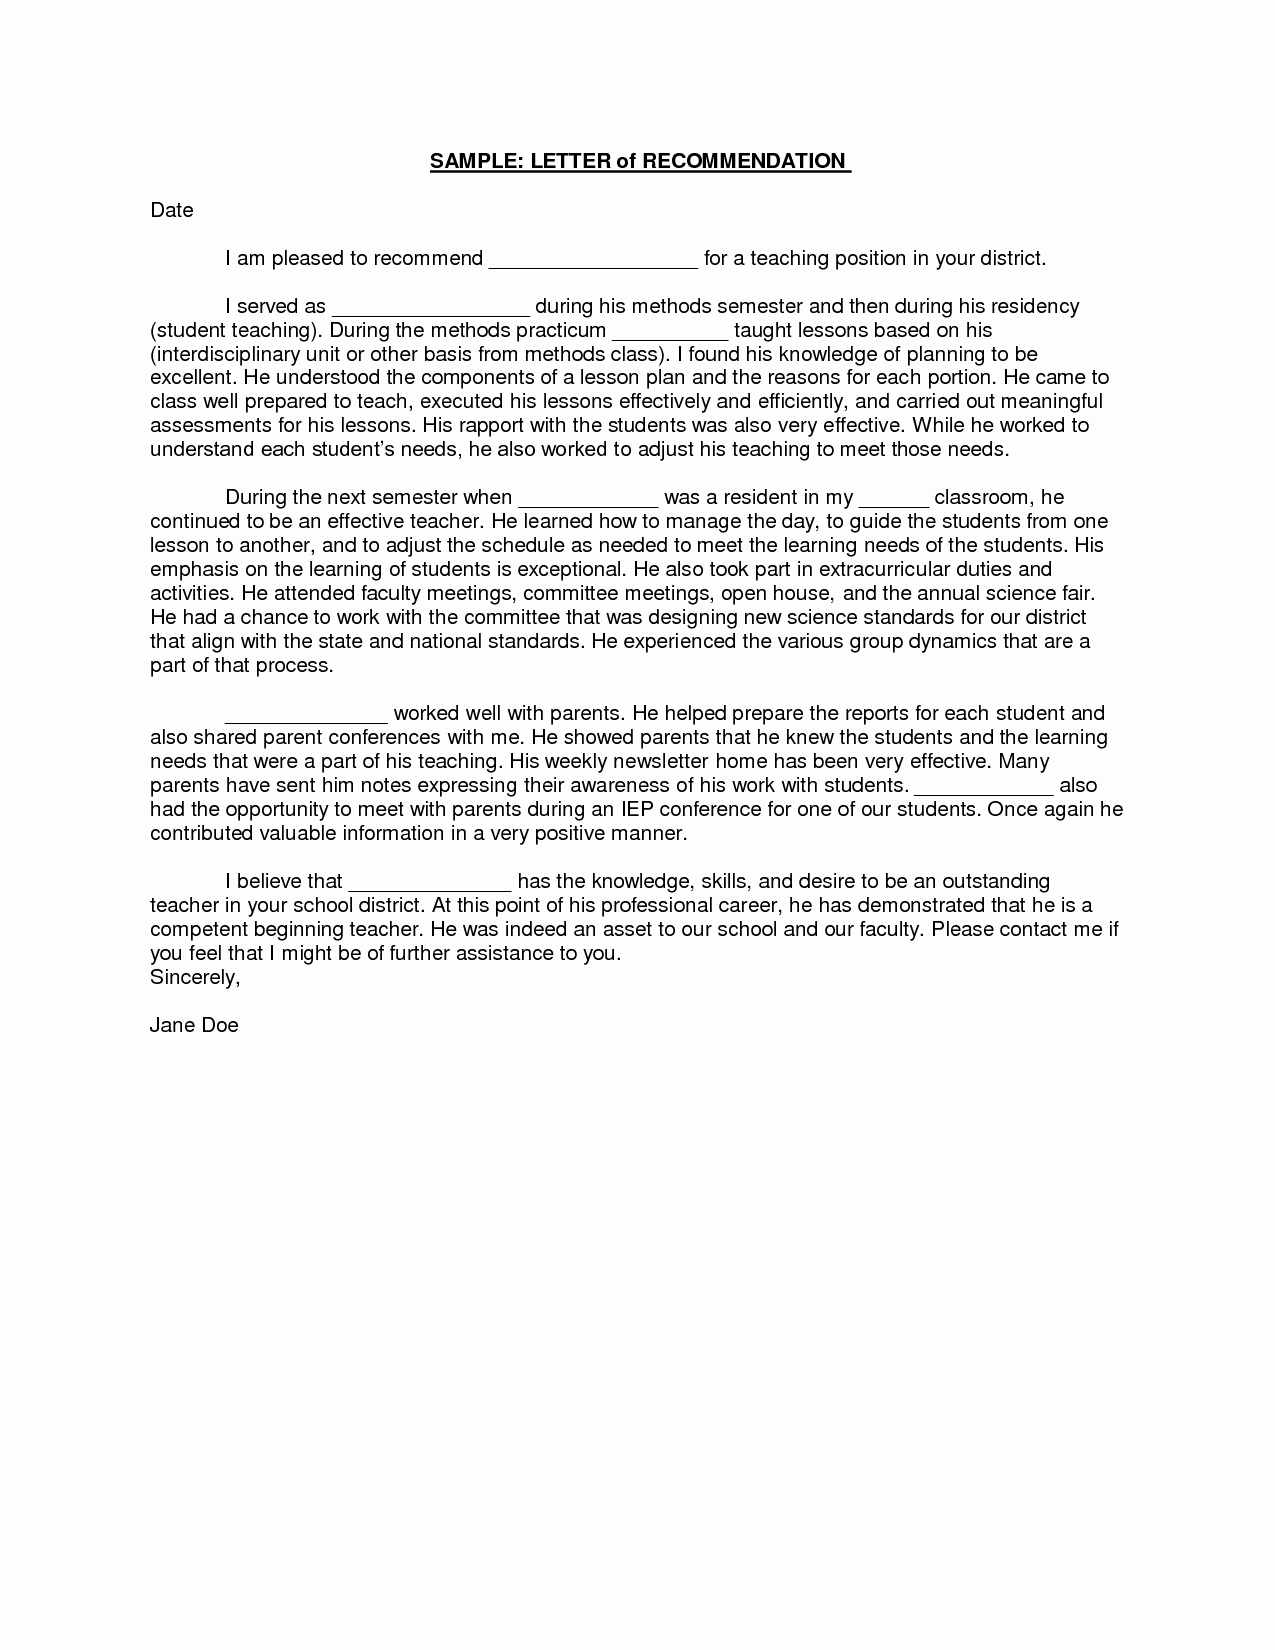 Letter Of Recommendation with Letterhead Lovely Sample Student Teacher Re Mendation Letters V9nqmvof